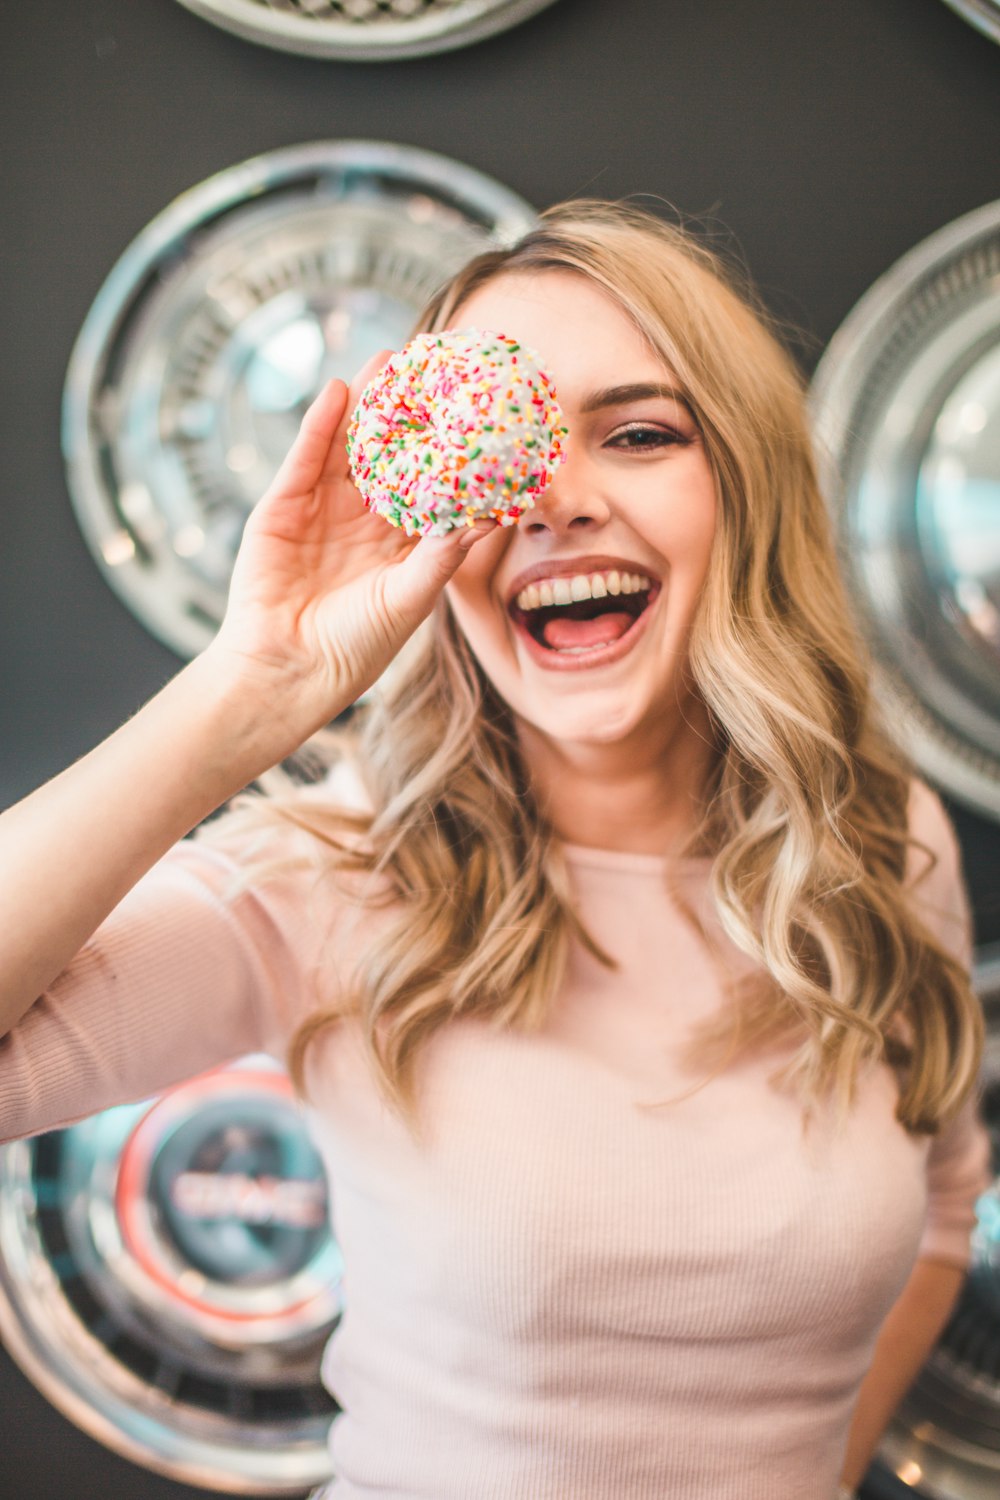 Fotografia de foco raso da mulher segurando donut